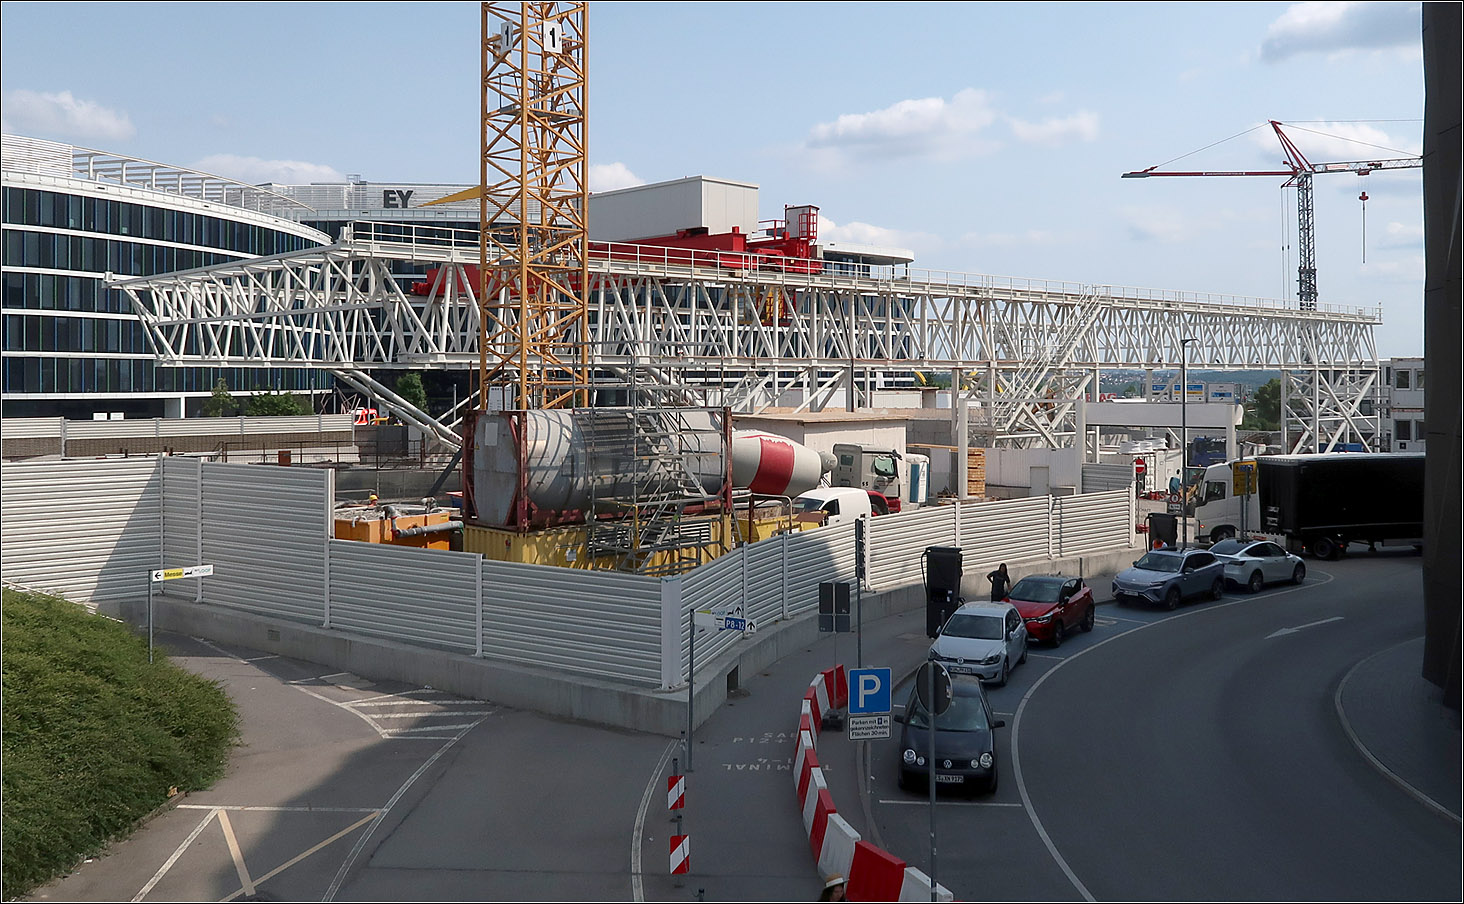 Am zukünftigen Ostausgang des Flughafenbahnhofes -

Der Ostausgang des Flughafenbahnhofes liegt in unmittelbarer Nähe des Stuttgart Airport Busterminal, wo die Fernbusse ankommen und abfahren.

Bei dem weißen Raumfachwerkkörper über der Baugrube handelt es sich um einen Laufkran und nicht etwa um die zukünftige Überdachung diese Ausganges.

10.06.2023 (M)
